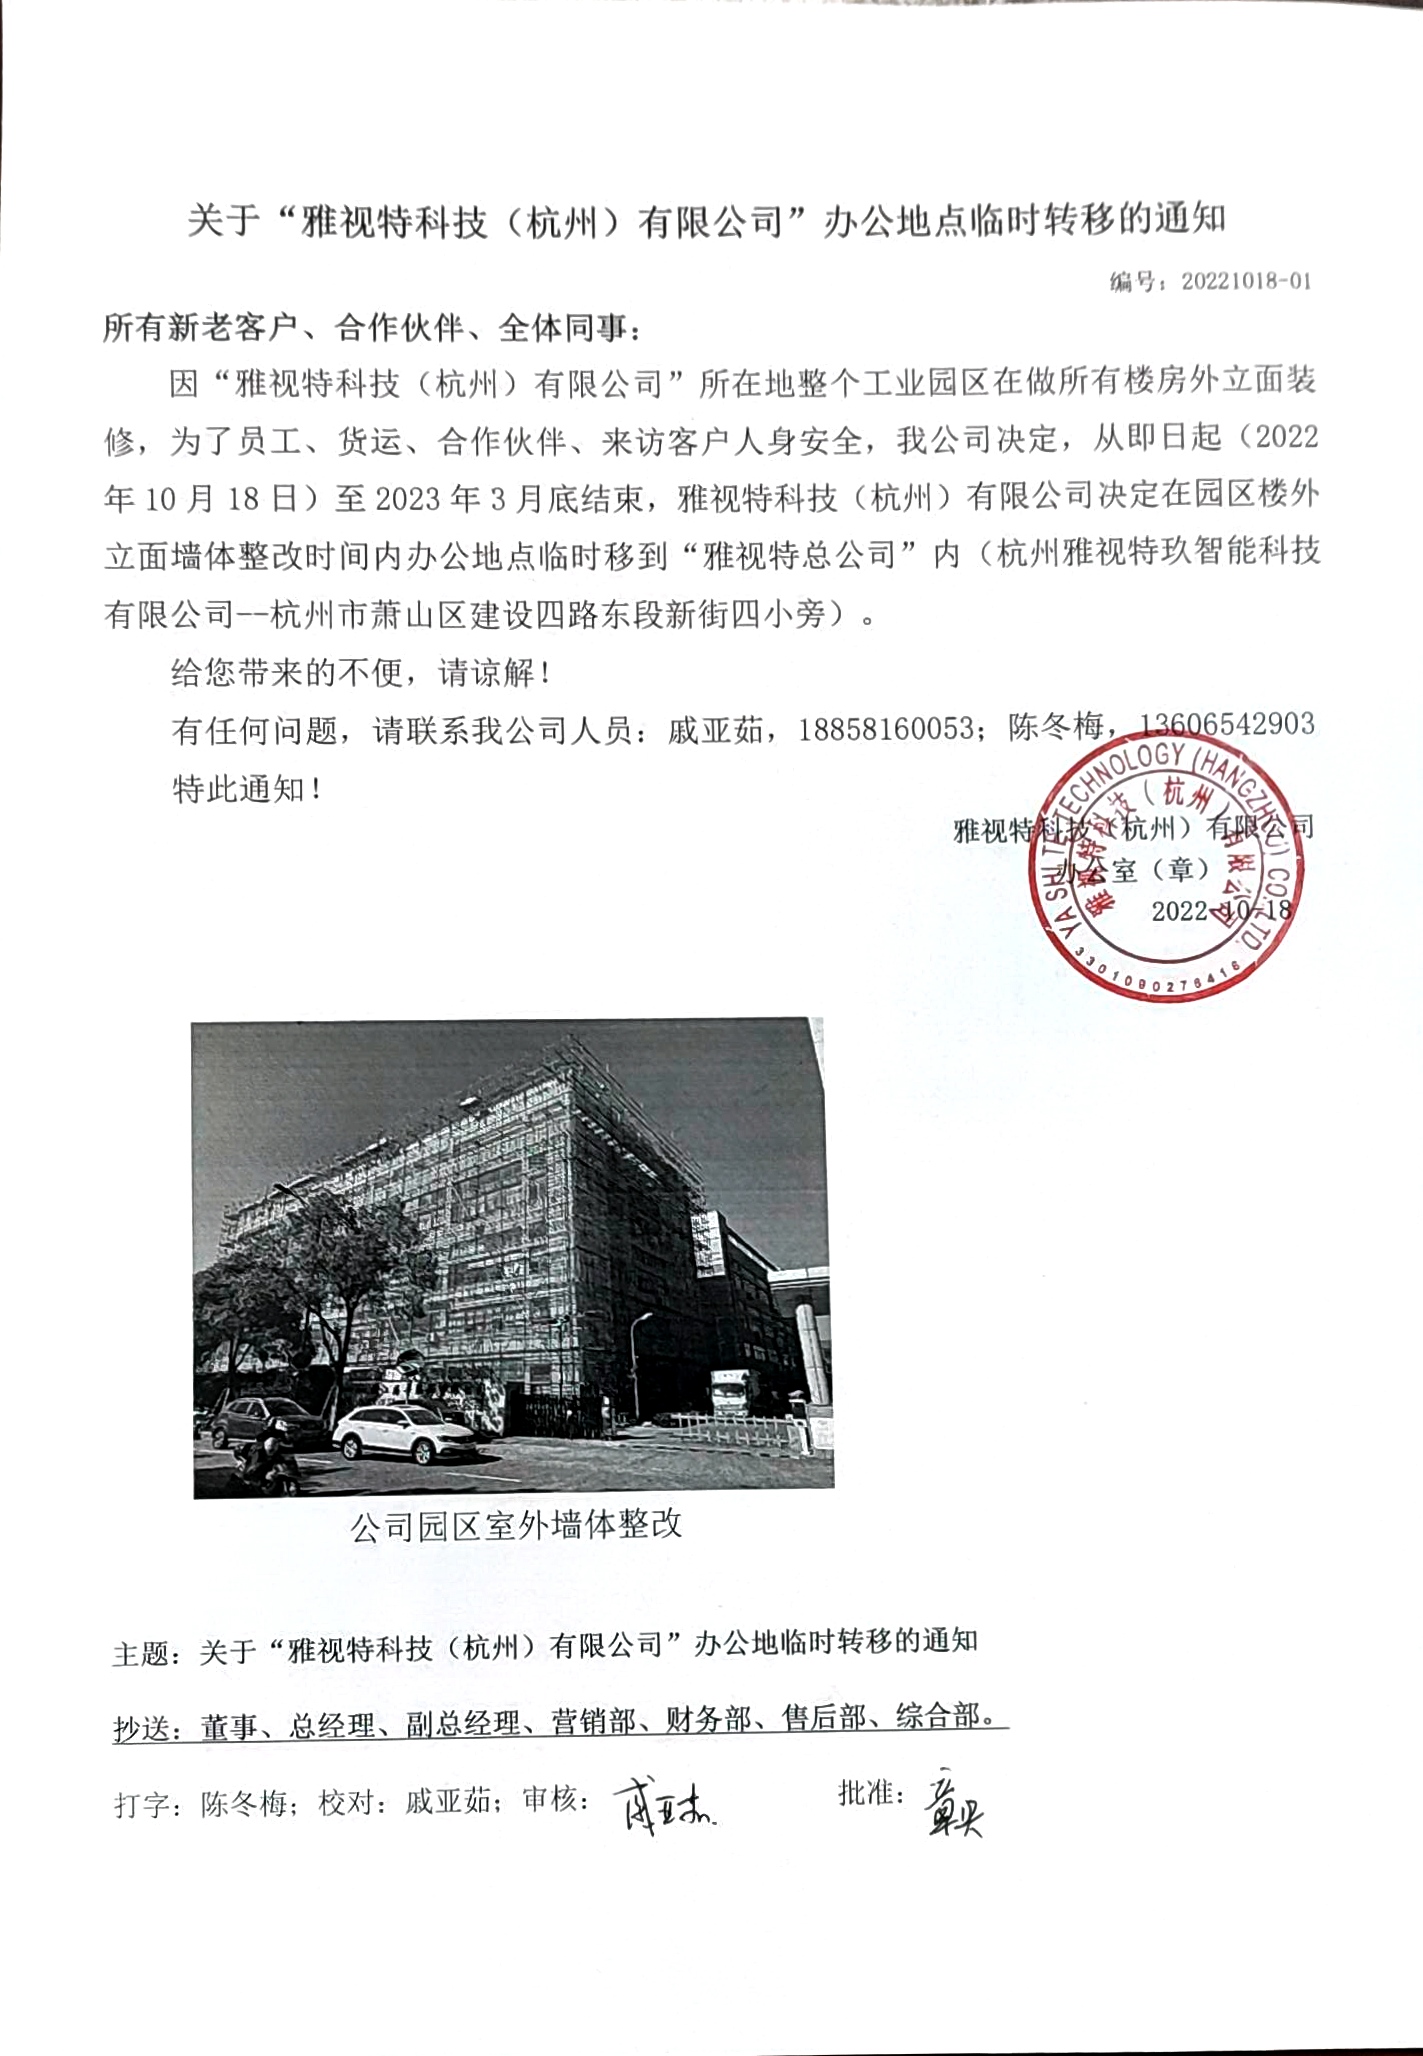 20221018-01 关于“雅视特科技（杭州）有限公司”办公地点临时转移的通知1.jpg